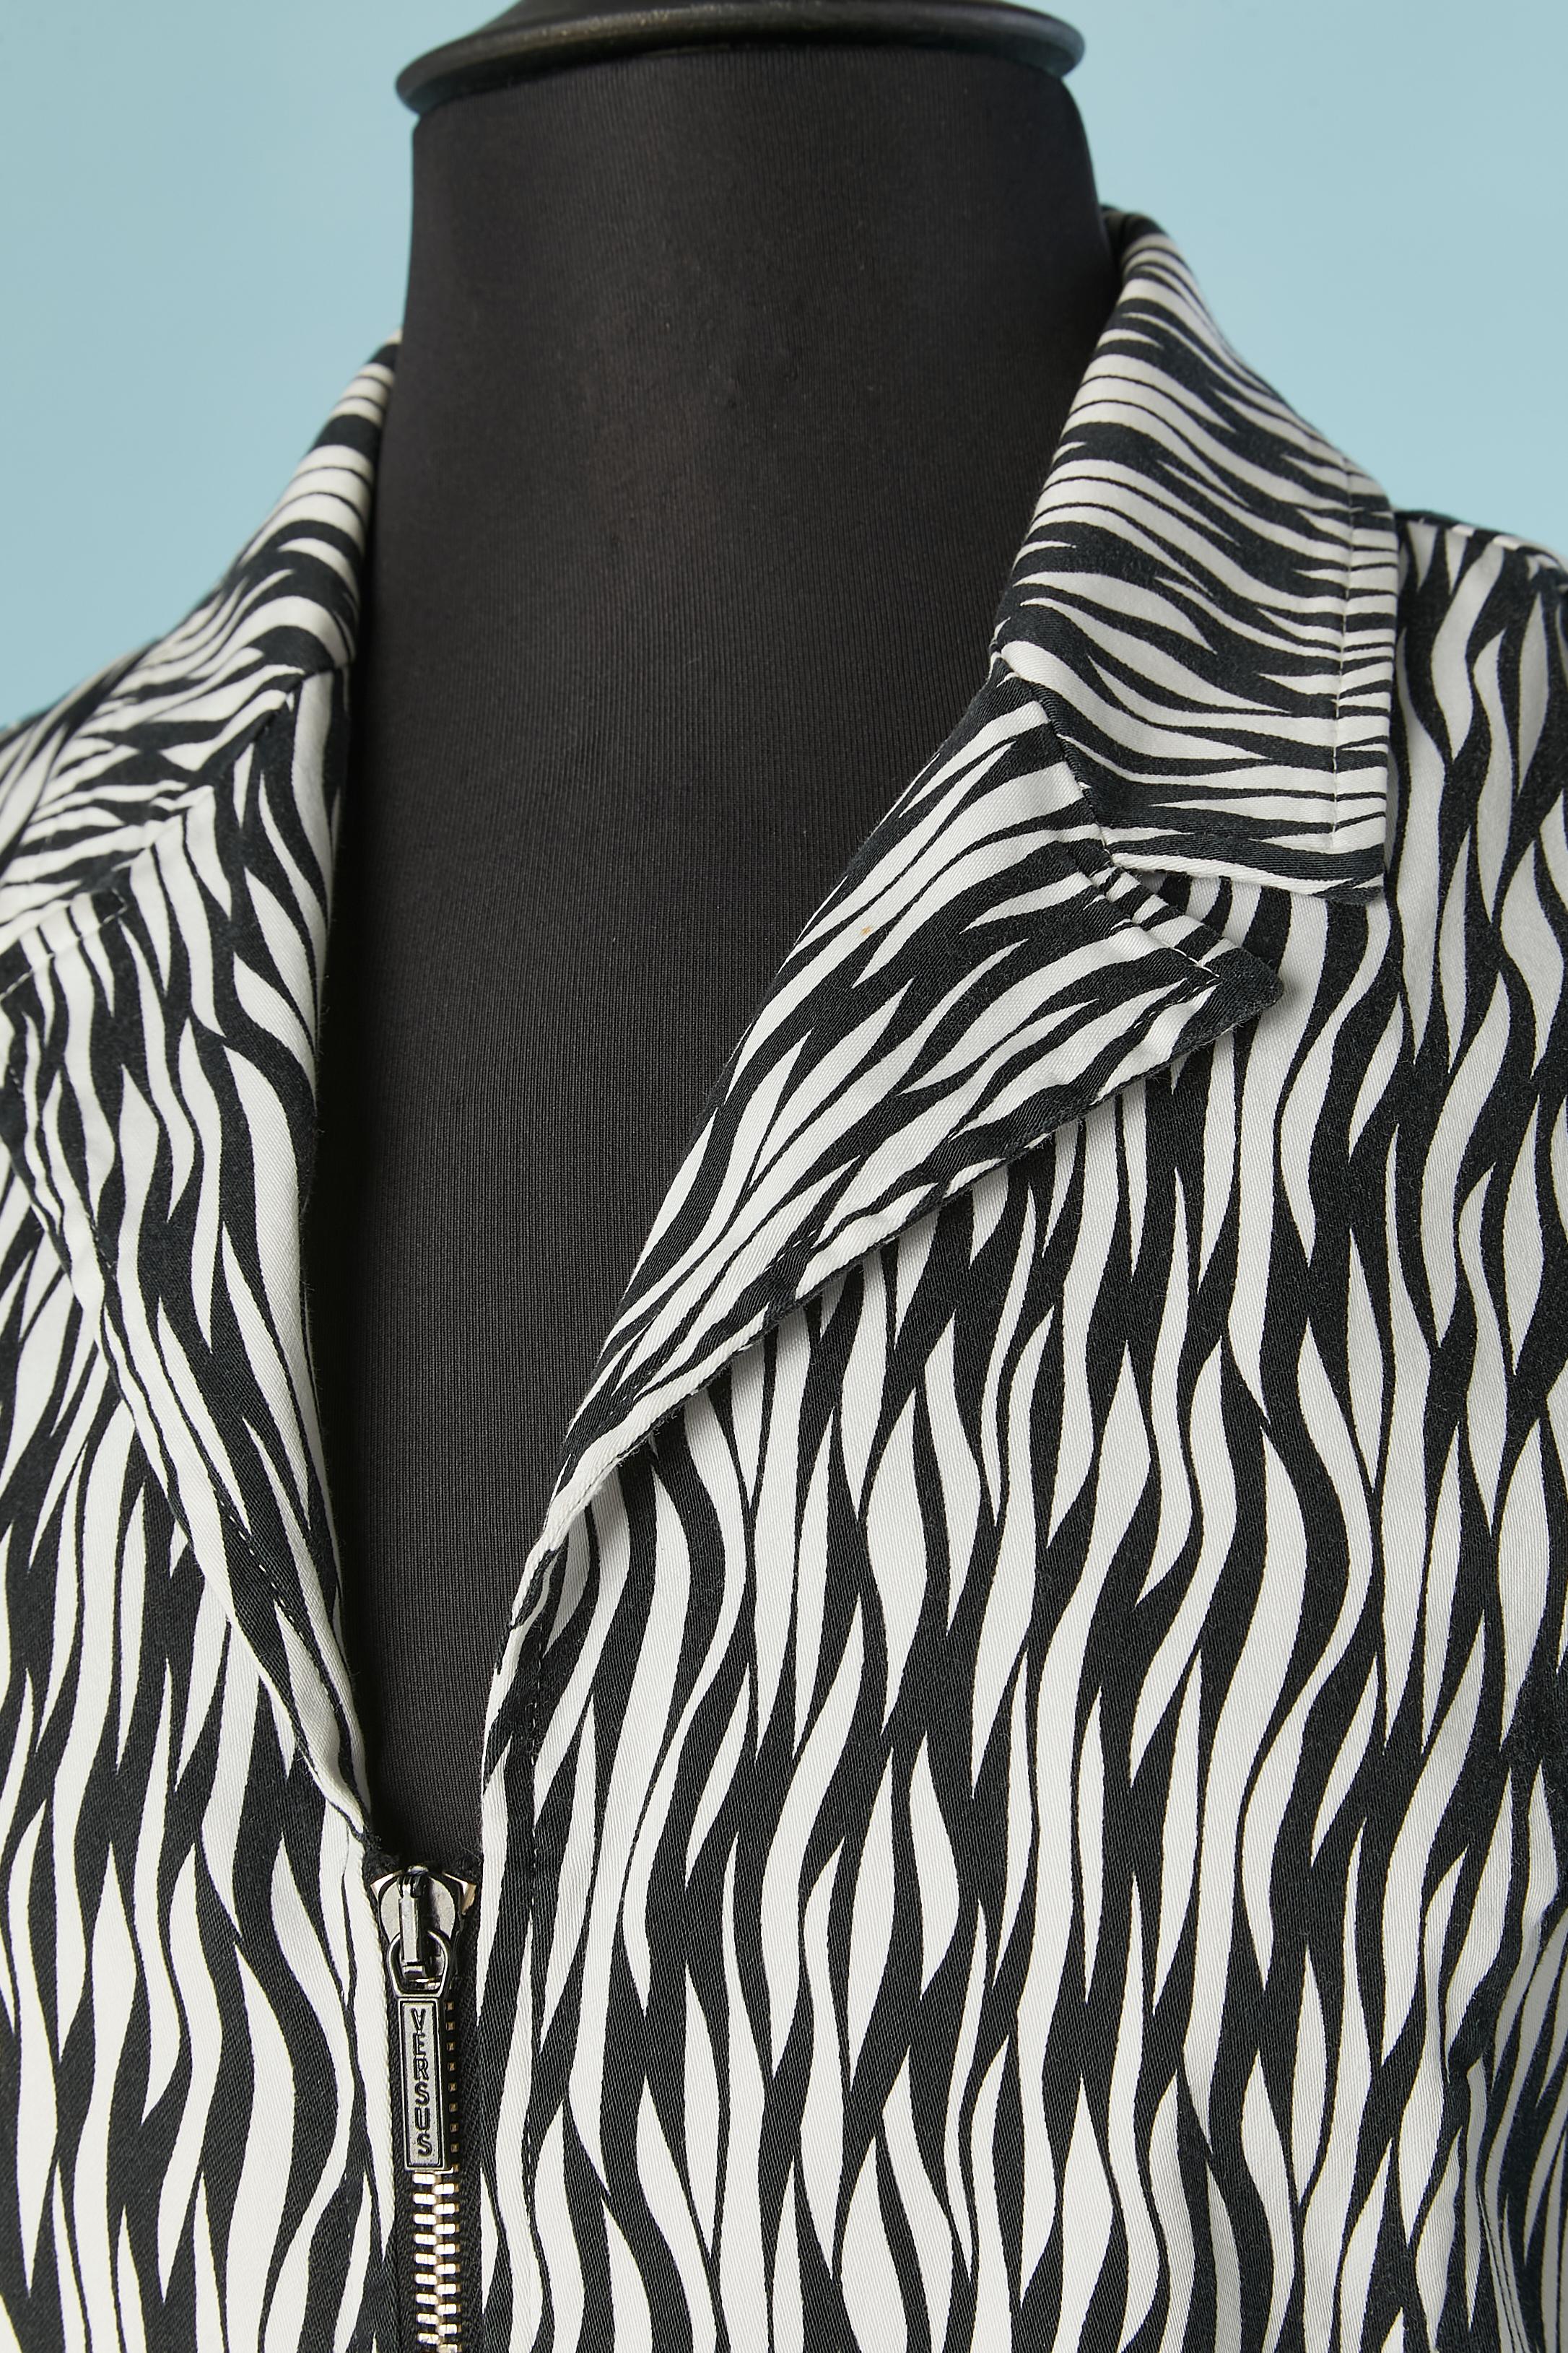 Zebra bedruckte Jacke mit mittlerer Vorderseite  Reißverschluss. Zusammensetzung des Hauptmaterials: 98% Baumwolle, 2% Stretch 
GRÖSSE 44 IT / 40 FR/ 8 US 
